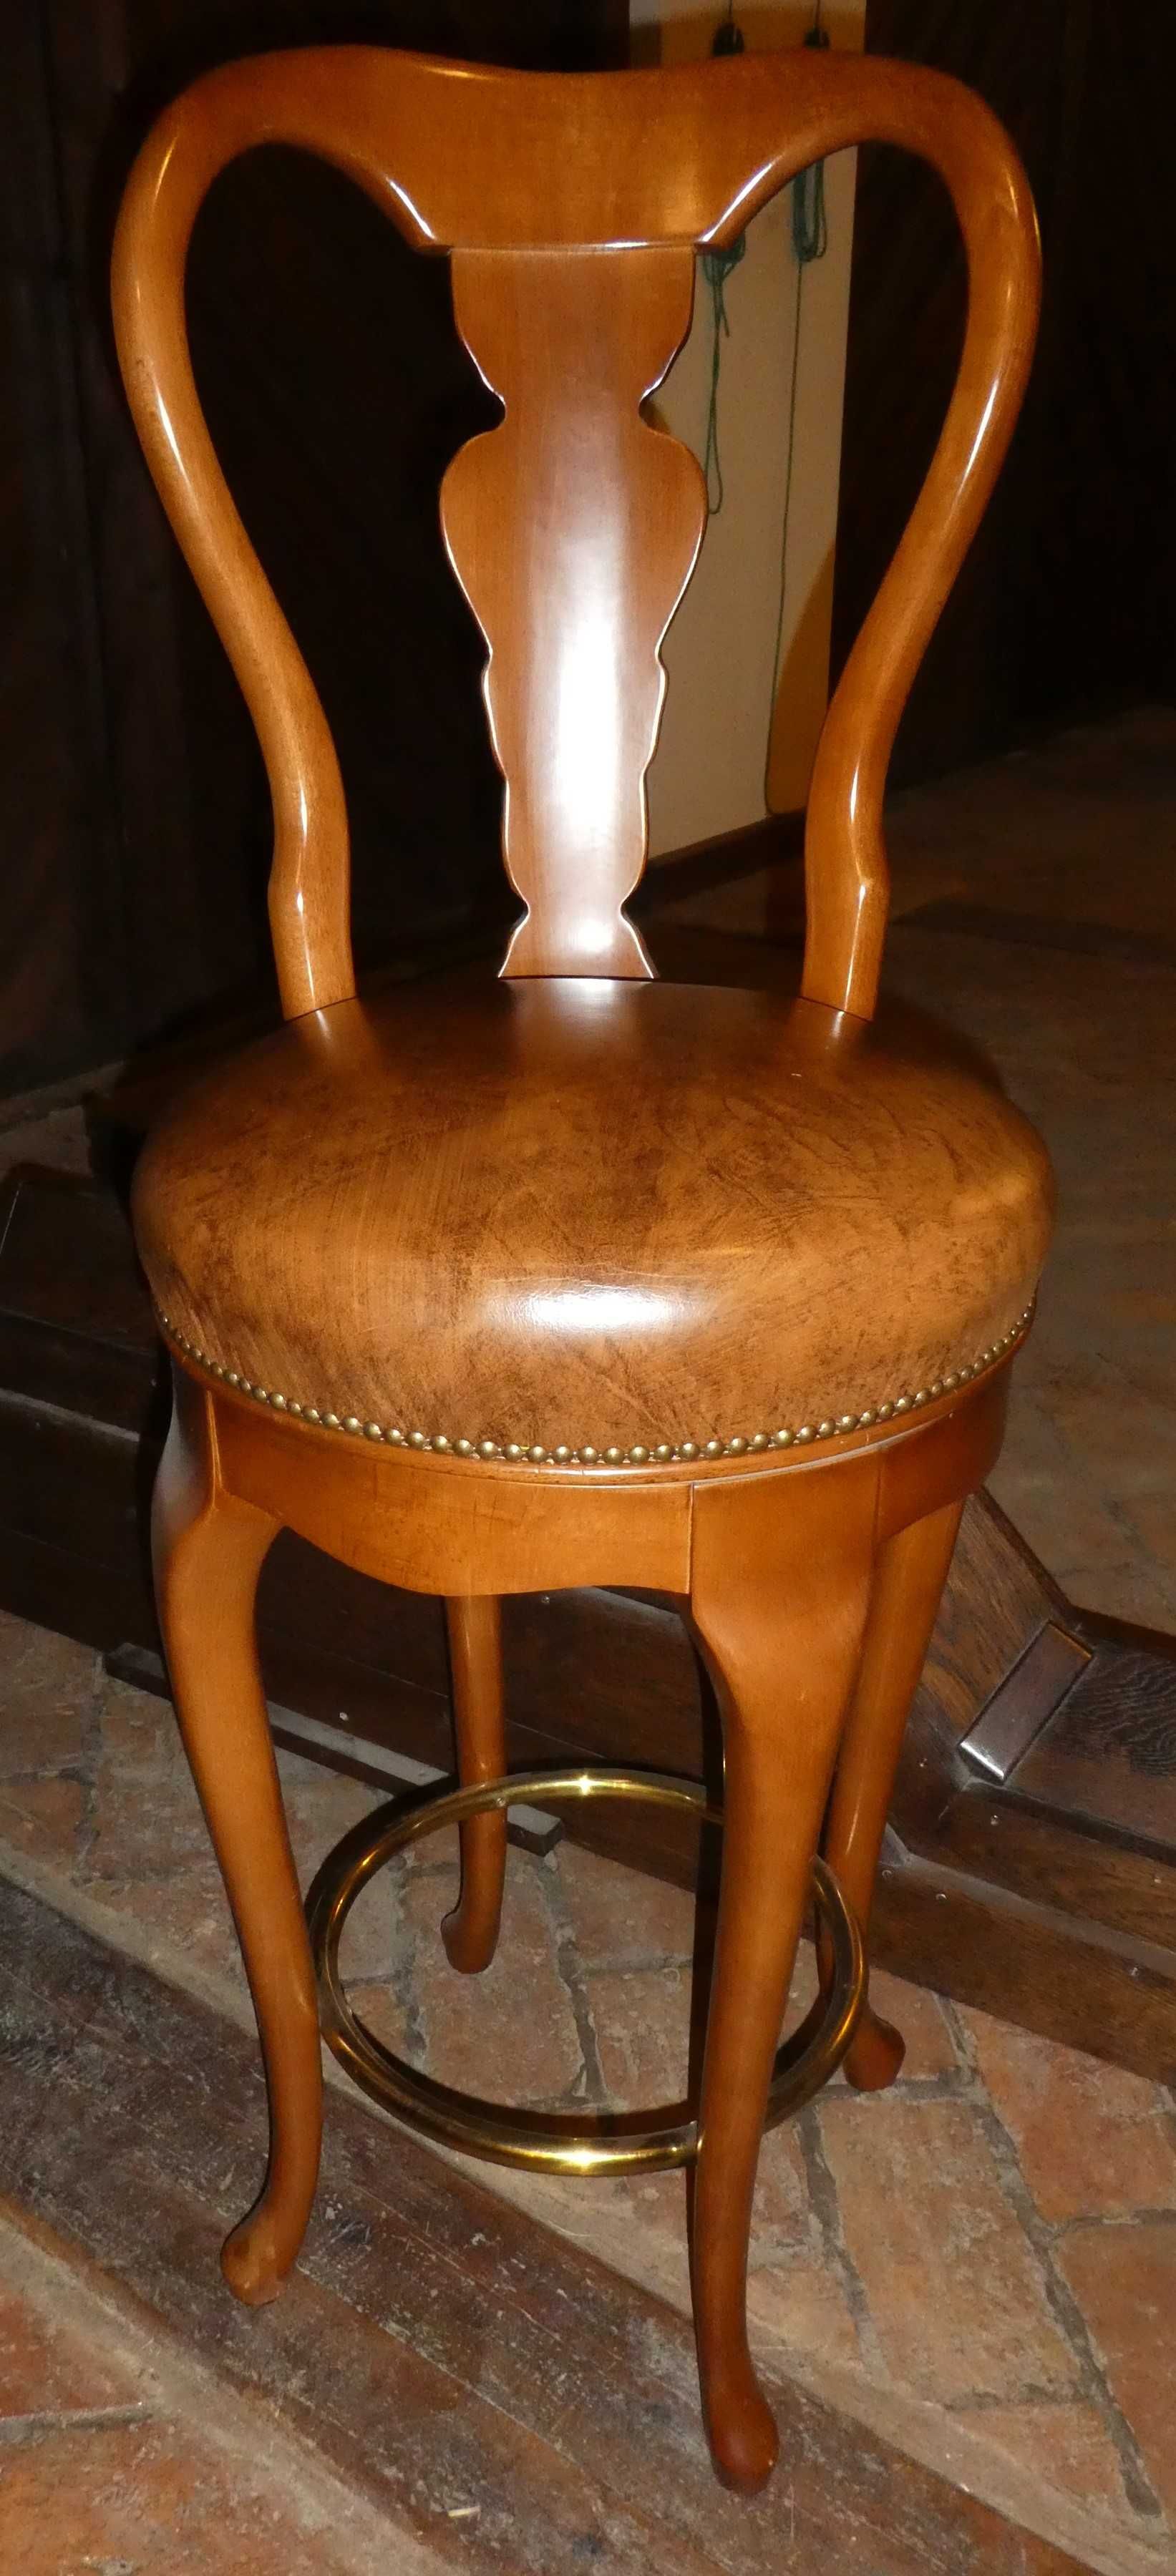 Barek klasyczny i krzesła – unikatowy komplet